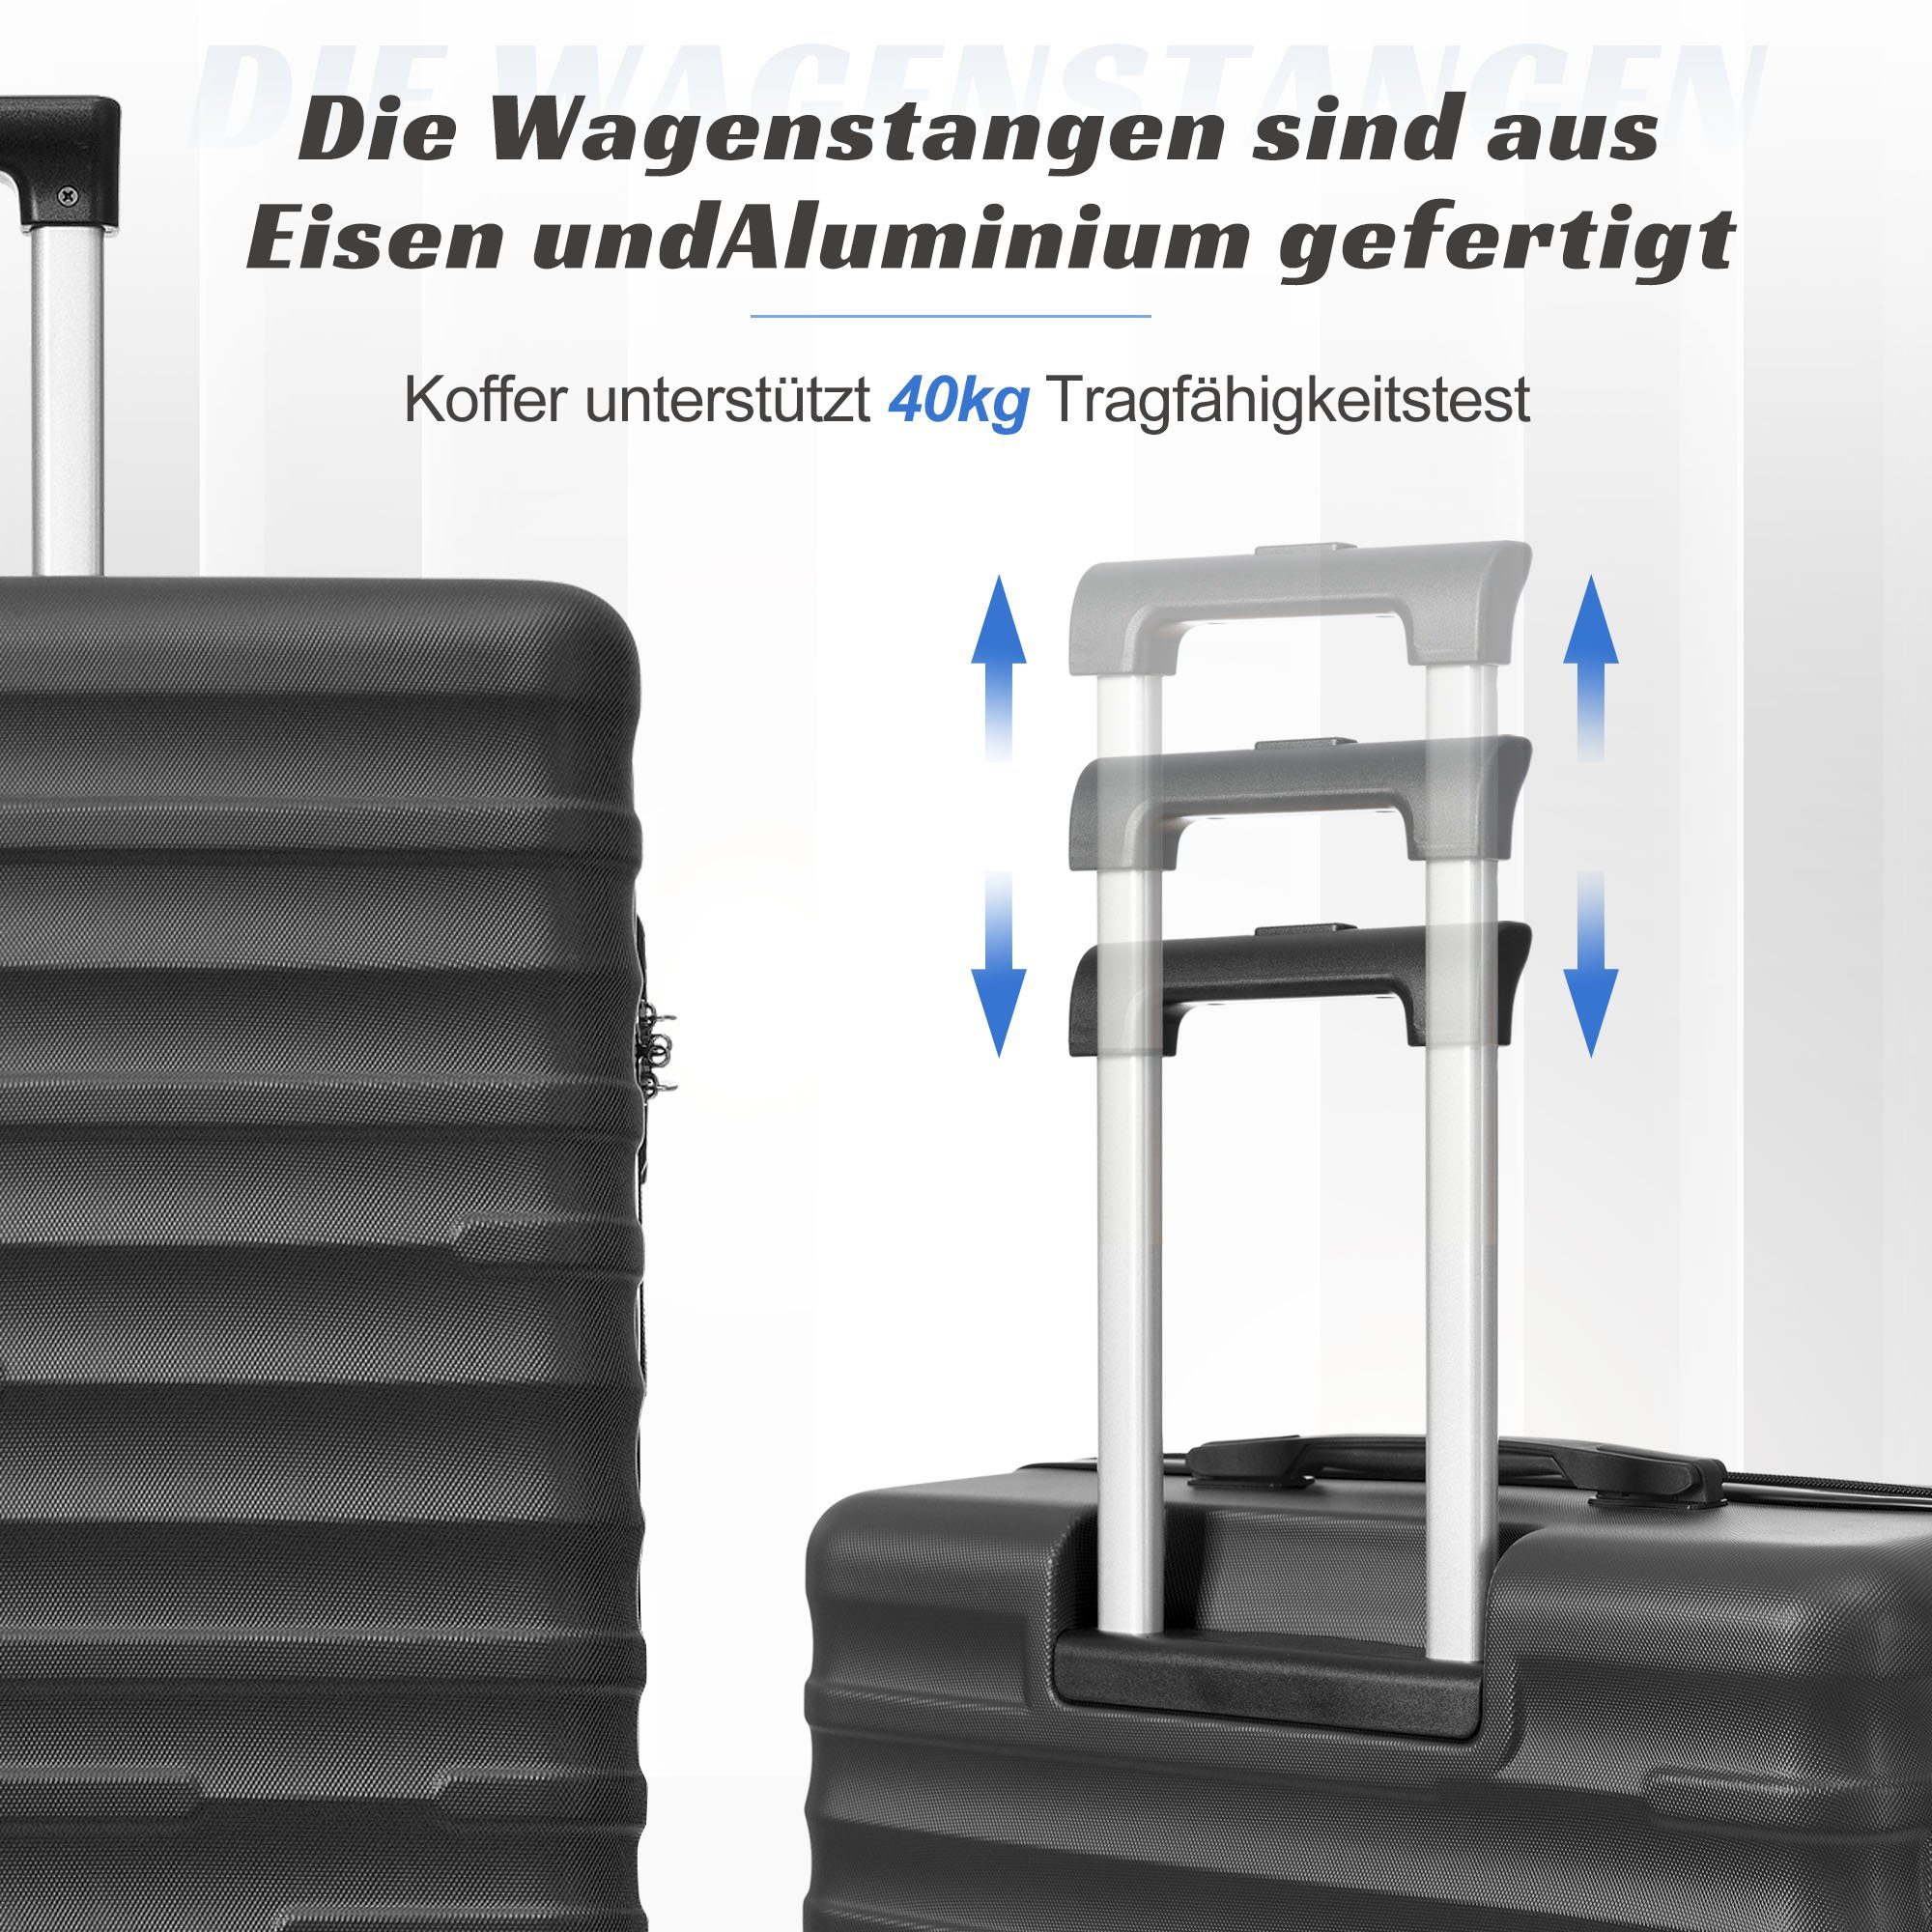 Schwarz Kapazität, Räder, erweiterbare Rollen Handgepäckkoffer OKWISH 4 TSA-Schloss, 4 ABS-Gepäck, Hochwertiges